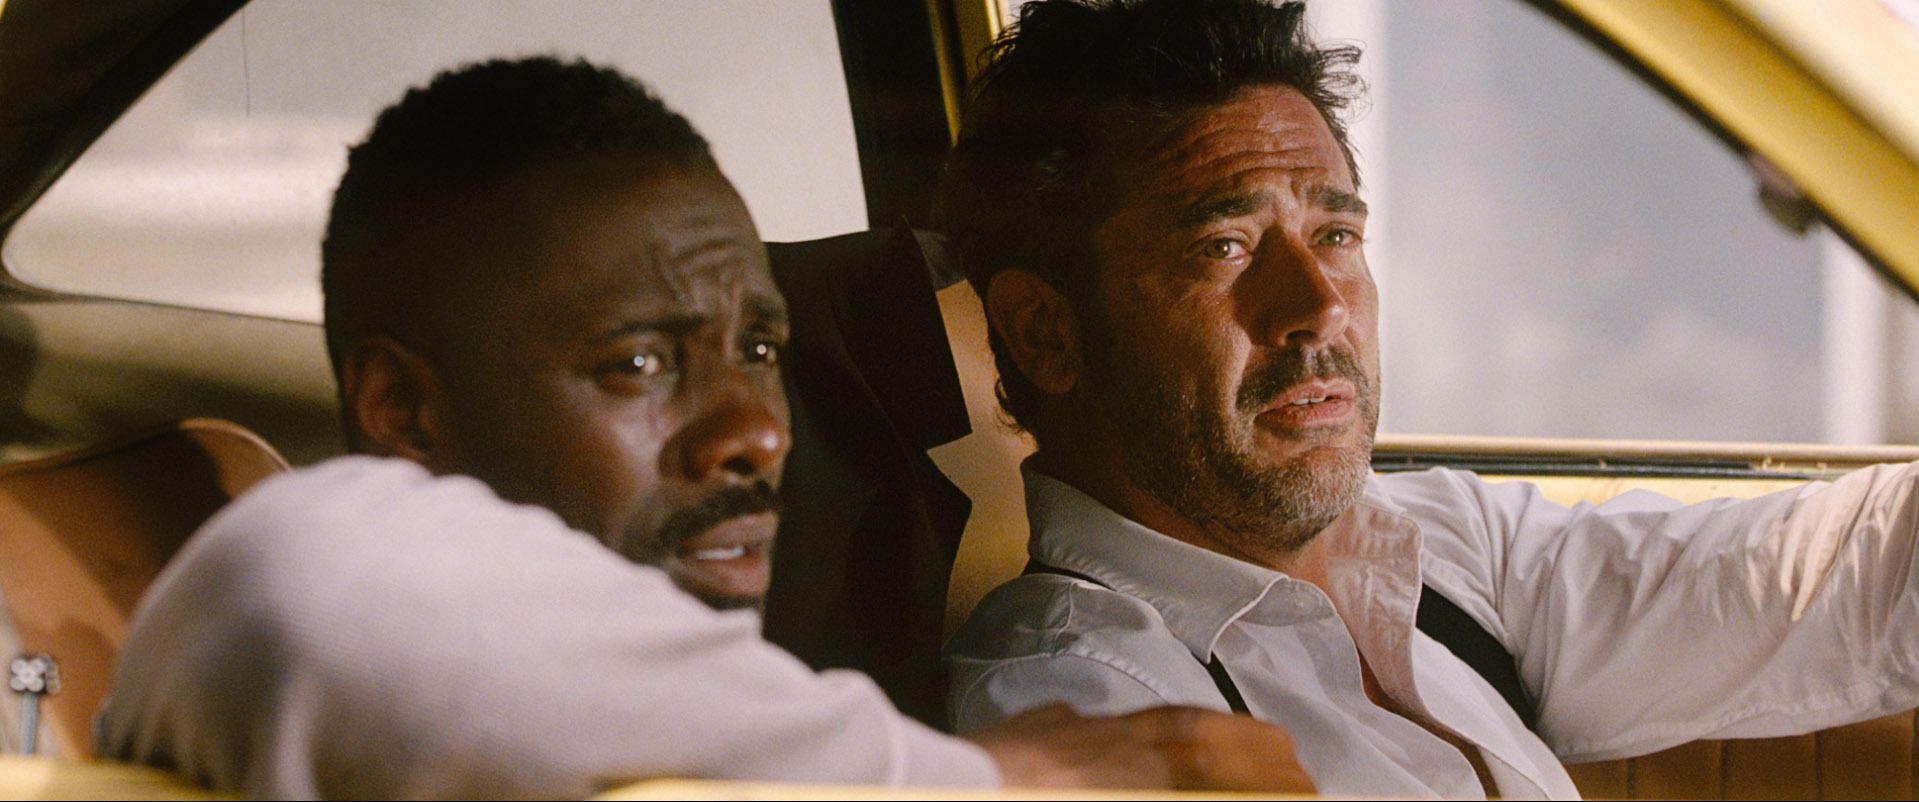 Still of Idris Elba and Jeffrey Dean Morgan in The Losers (2010)